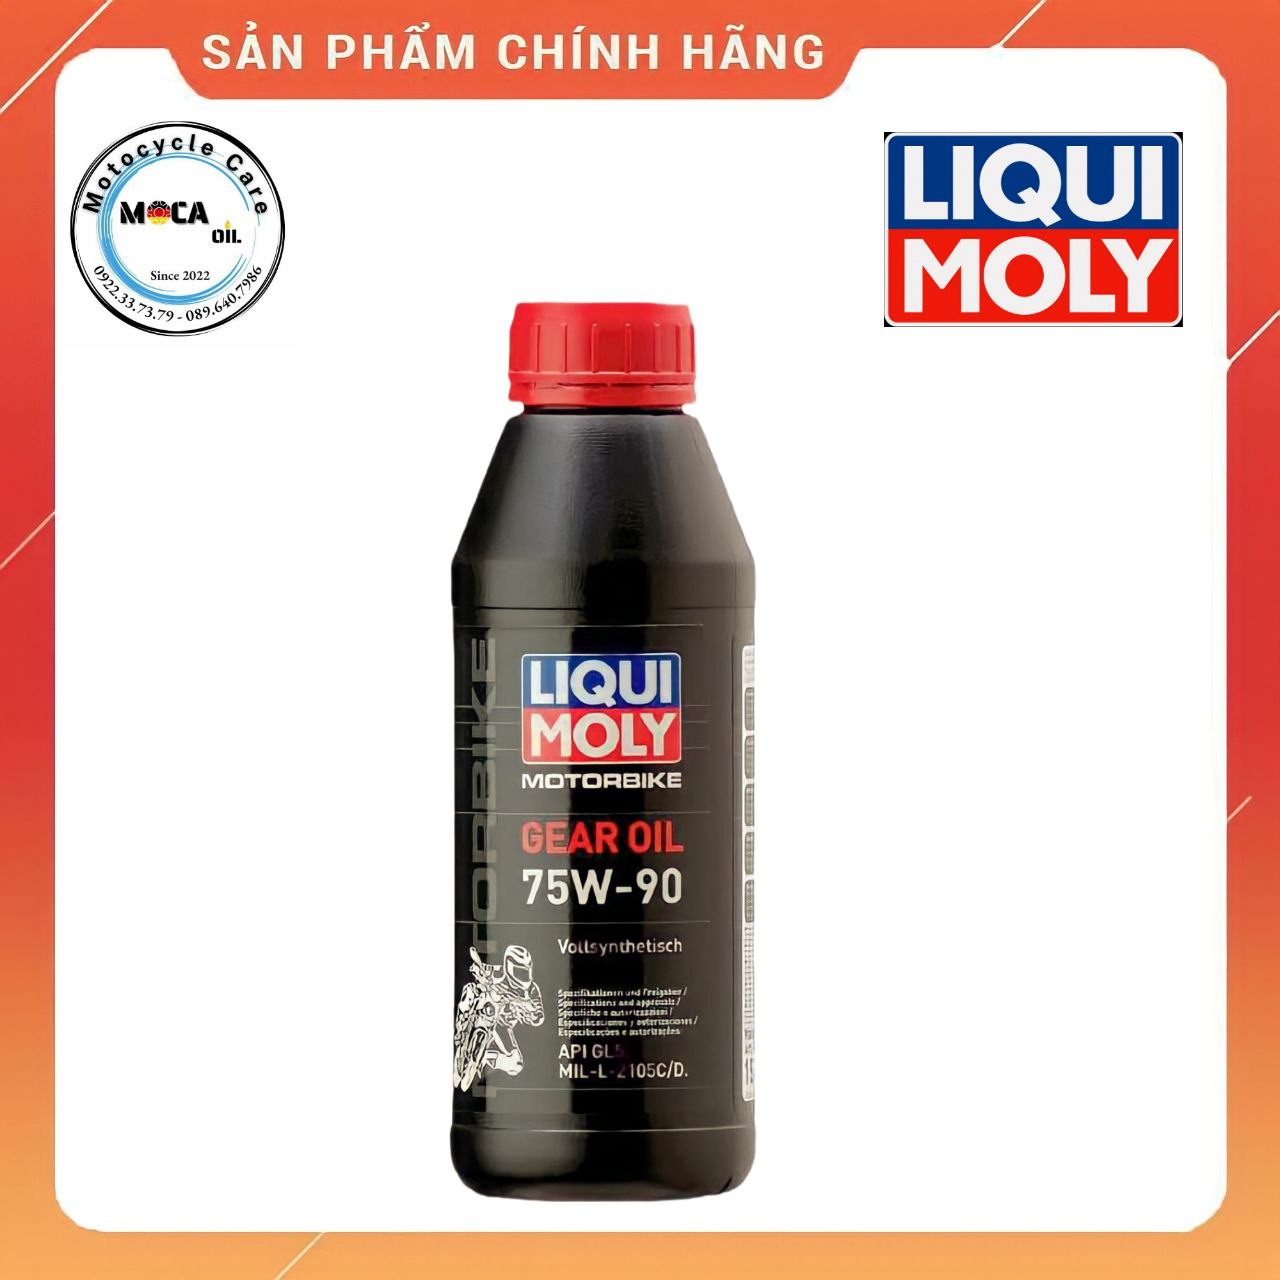 Liqui Moly Gear Oil 75w90, 500ml